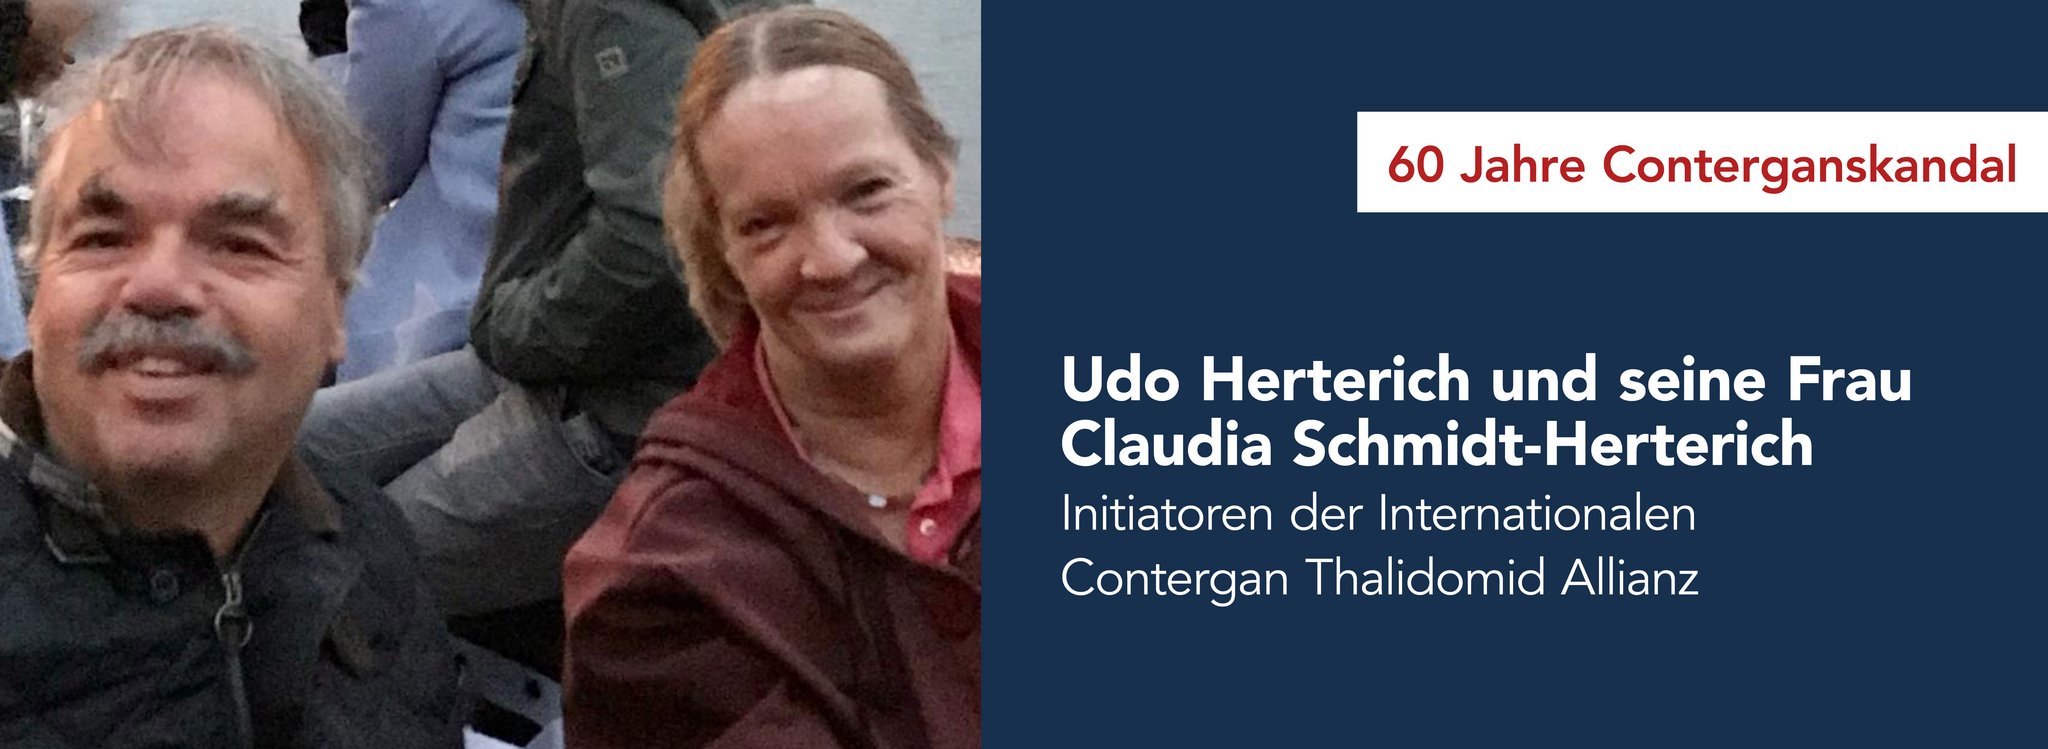 Das Bild zeigt Udo Herterich und Claudia Schmidt-Herterich Initiatoren der Internationalen Contergan Thalidomid Allianz